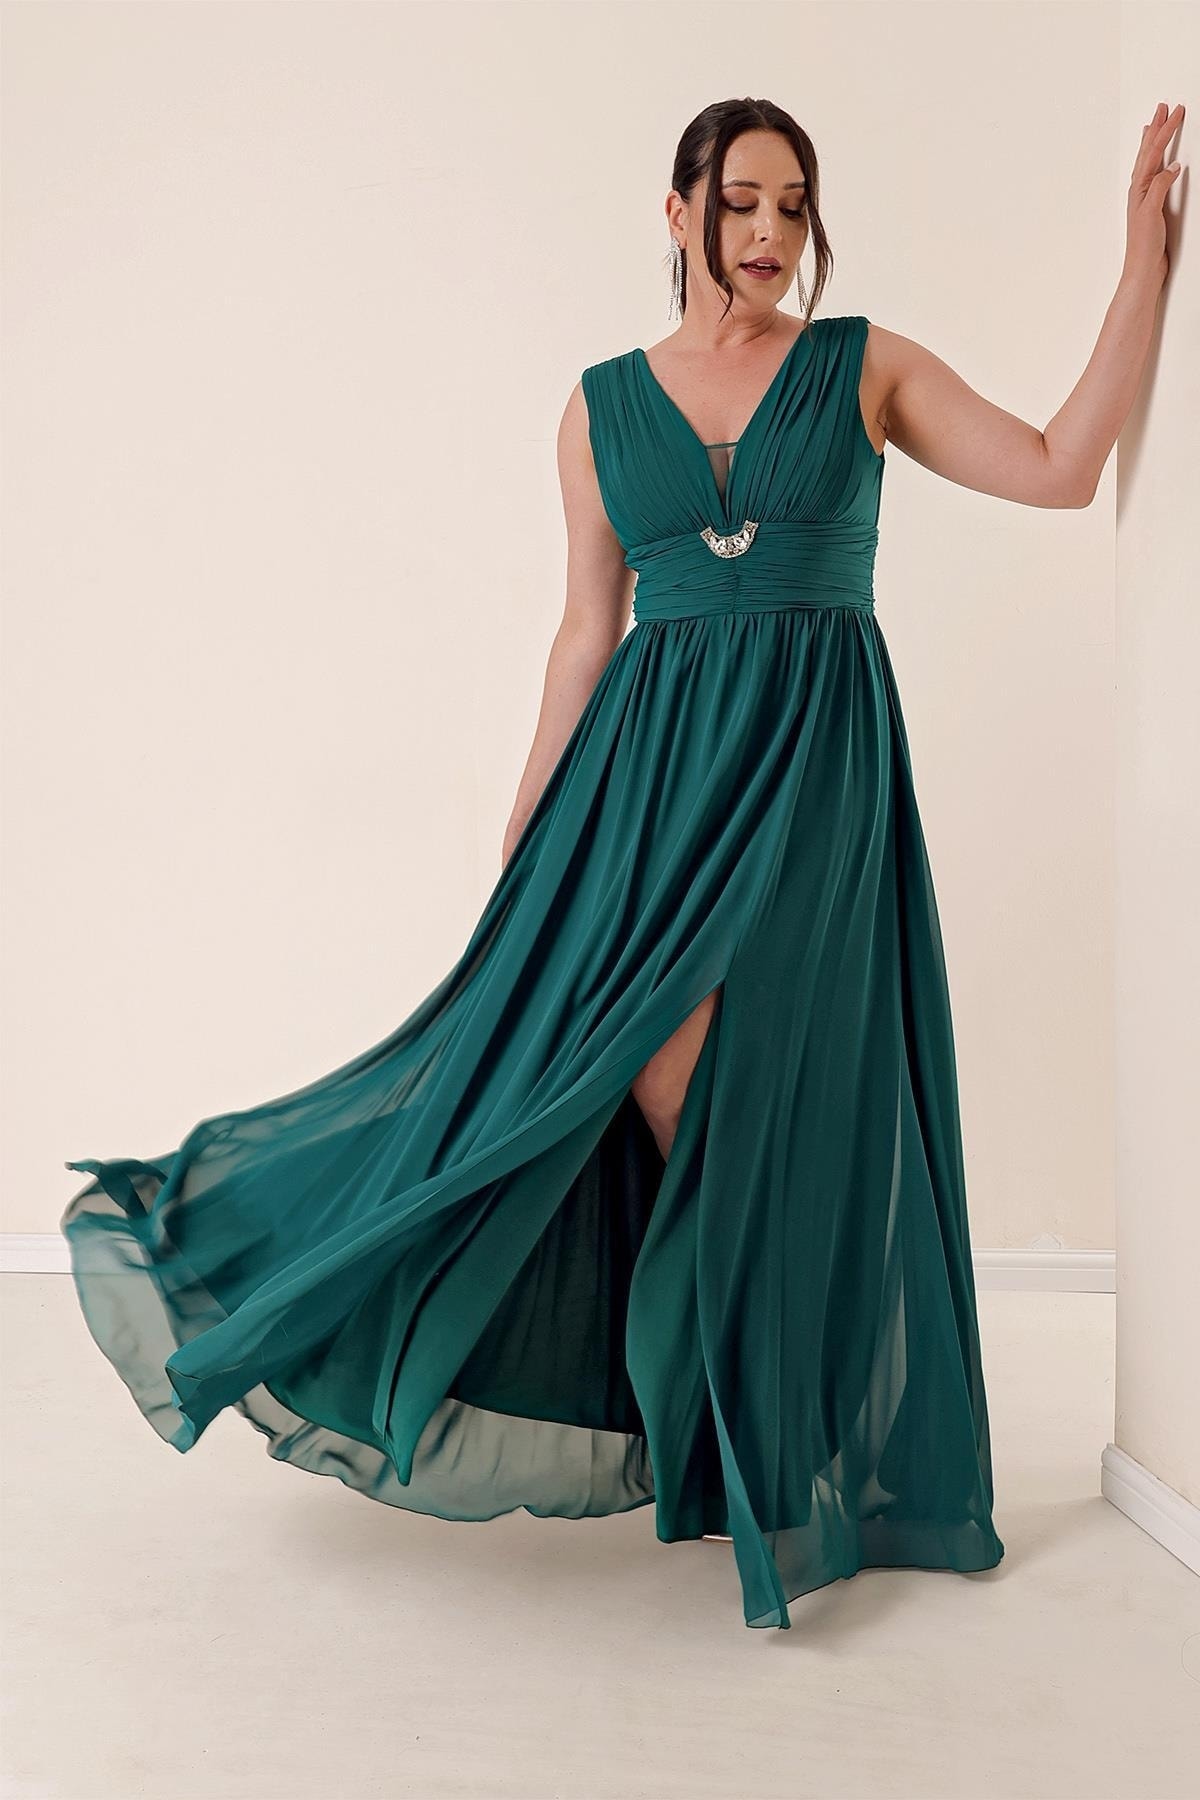 Levně By Saygı Front Back V-Neck Stone Detailed Waist Draped Plus Size Chiffon Long Dress with a Front Slit Emerald